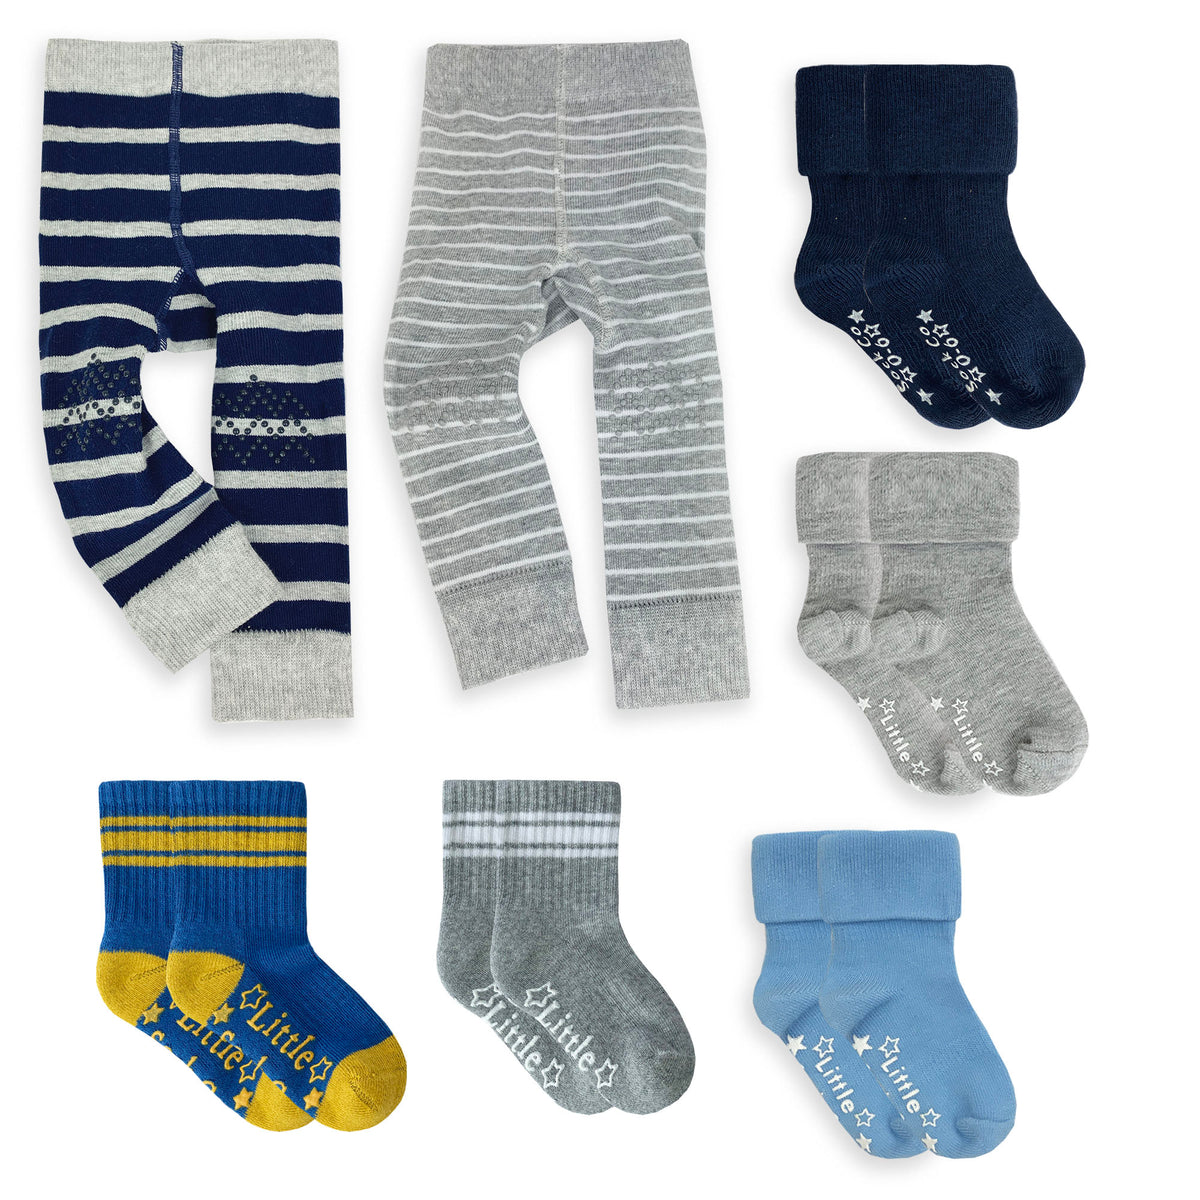 Leggings & Socks Super Set 2 - Blue